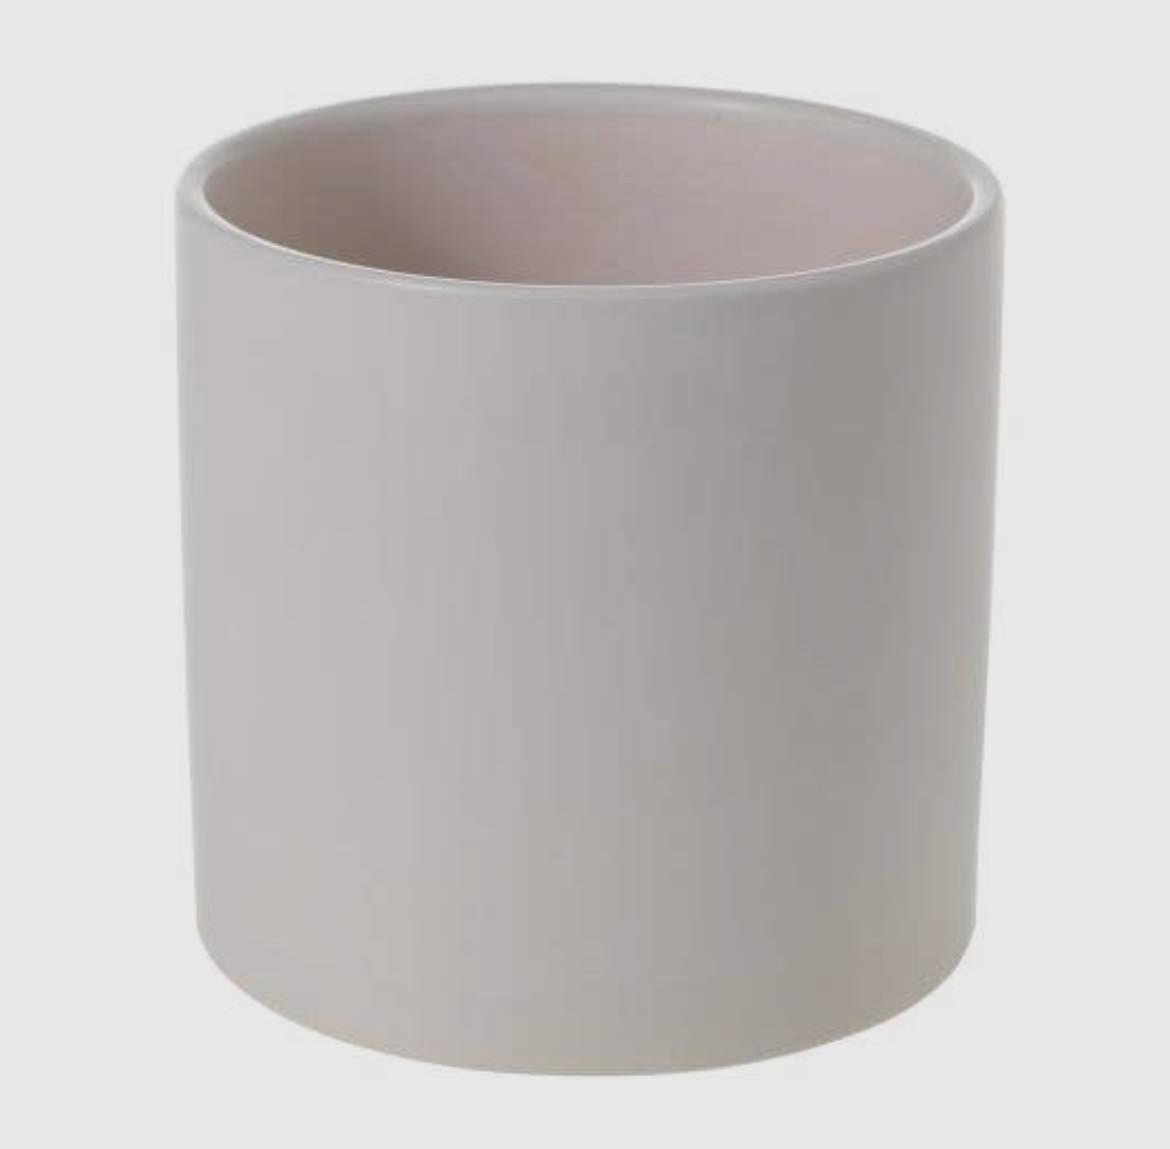 LITF Cercle 6.5" Pot | Matte Black or White